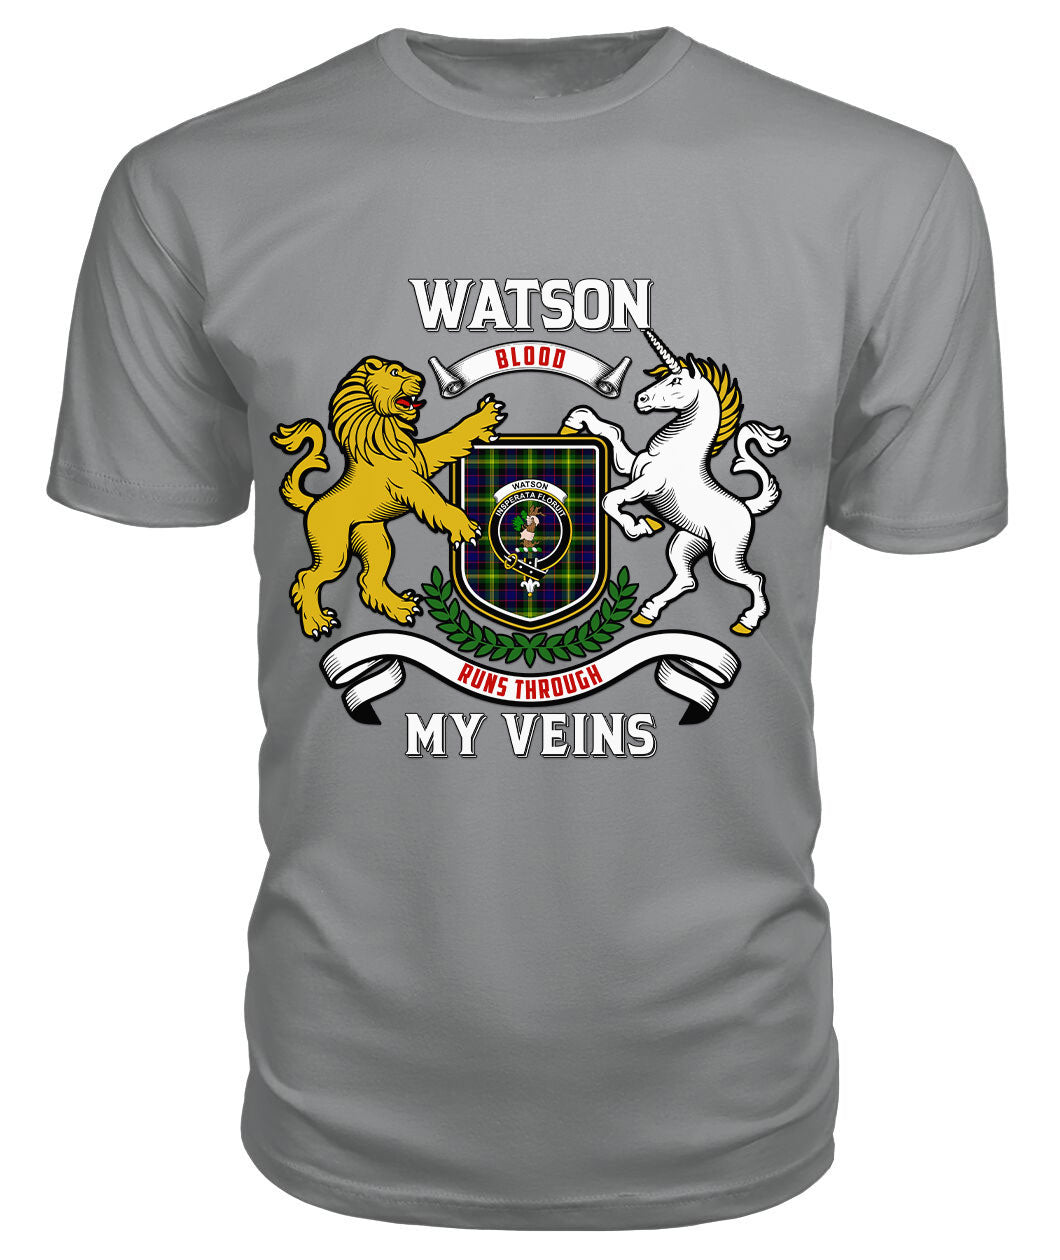 Watson Modern Tartan Crest 2D T-shirt - Blood Runs Through My Veins Style